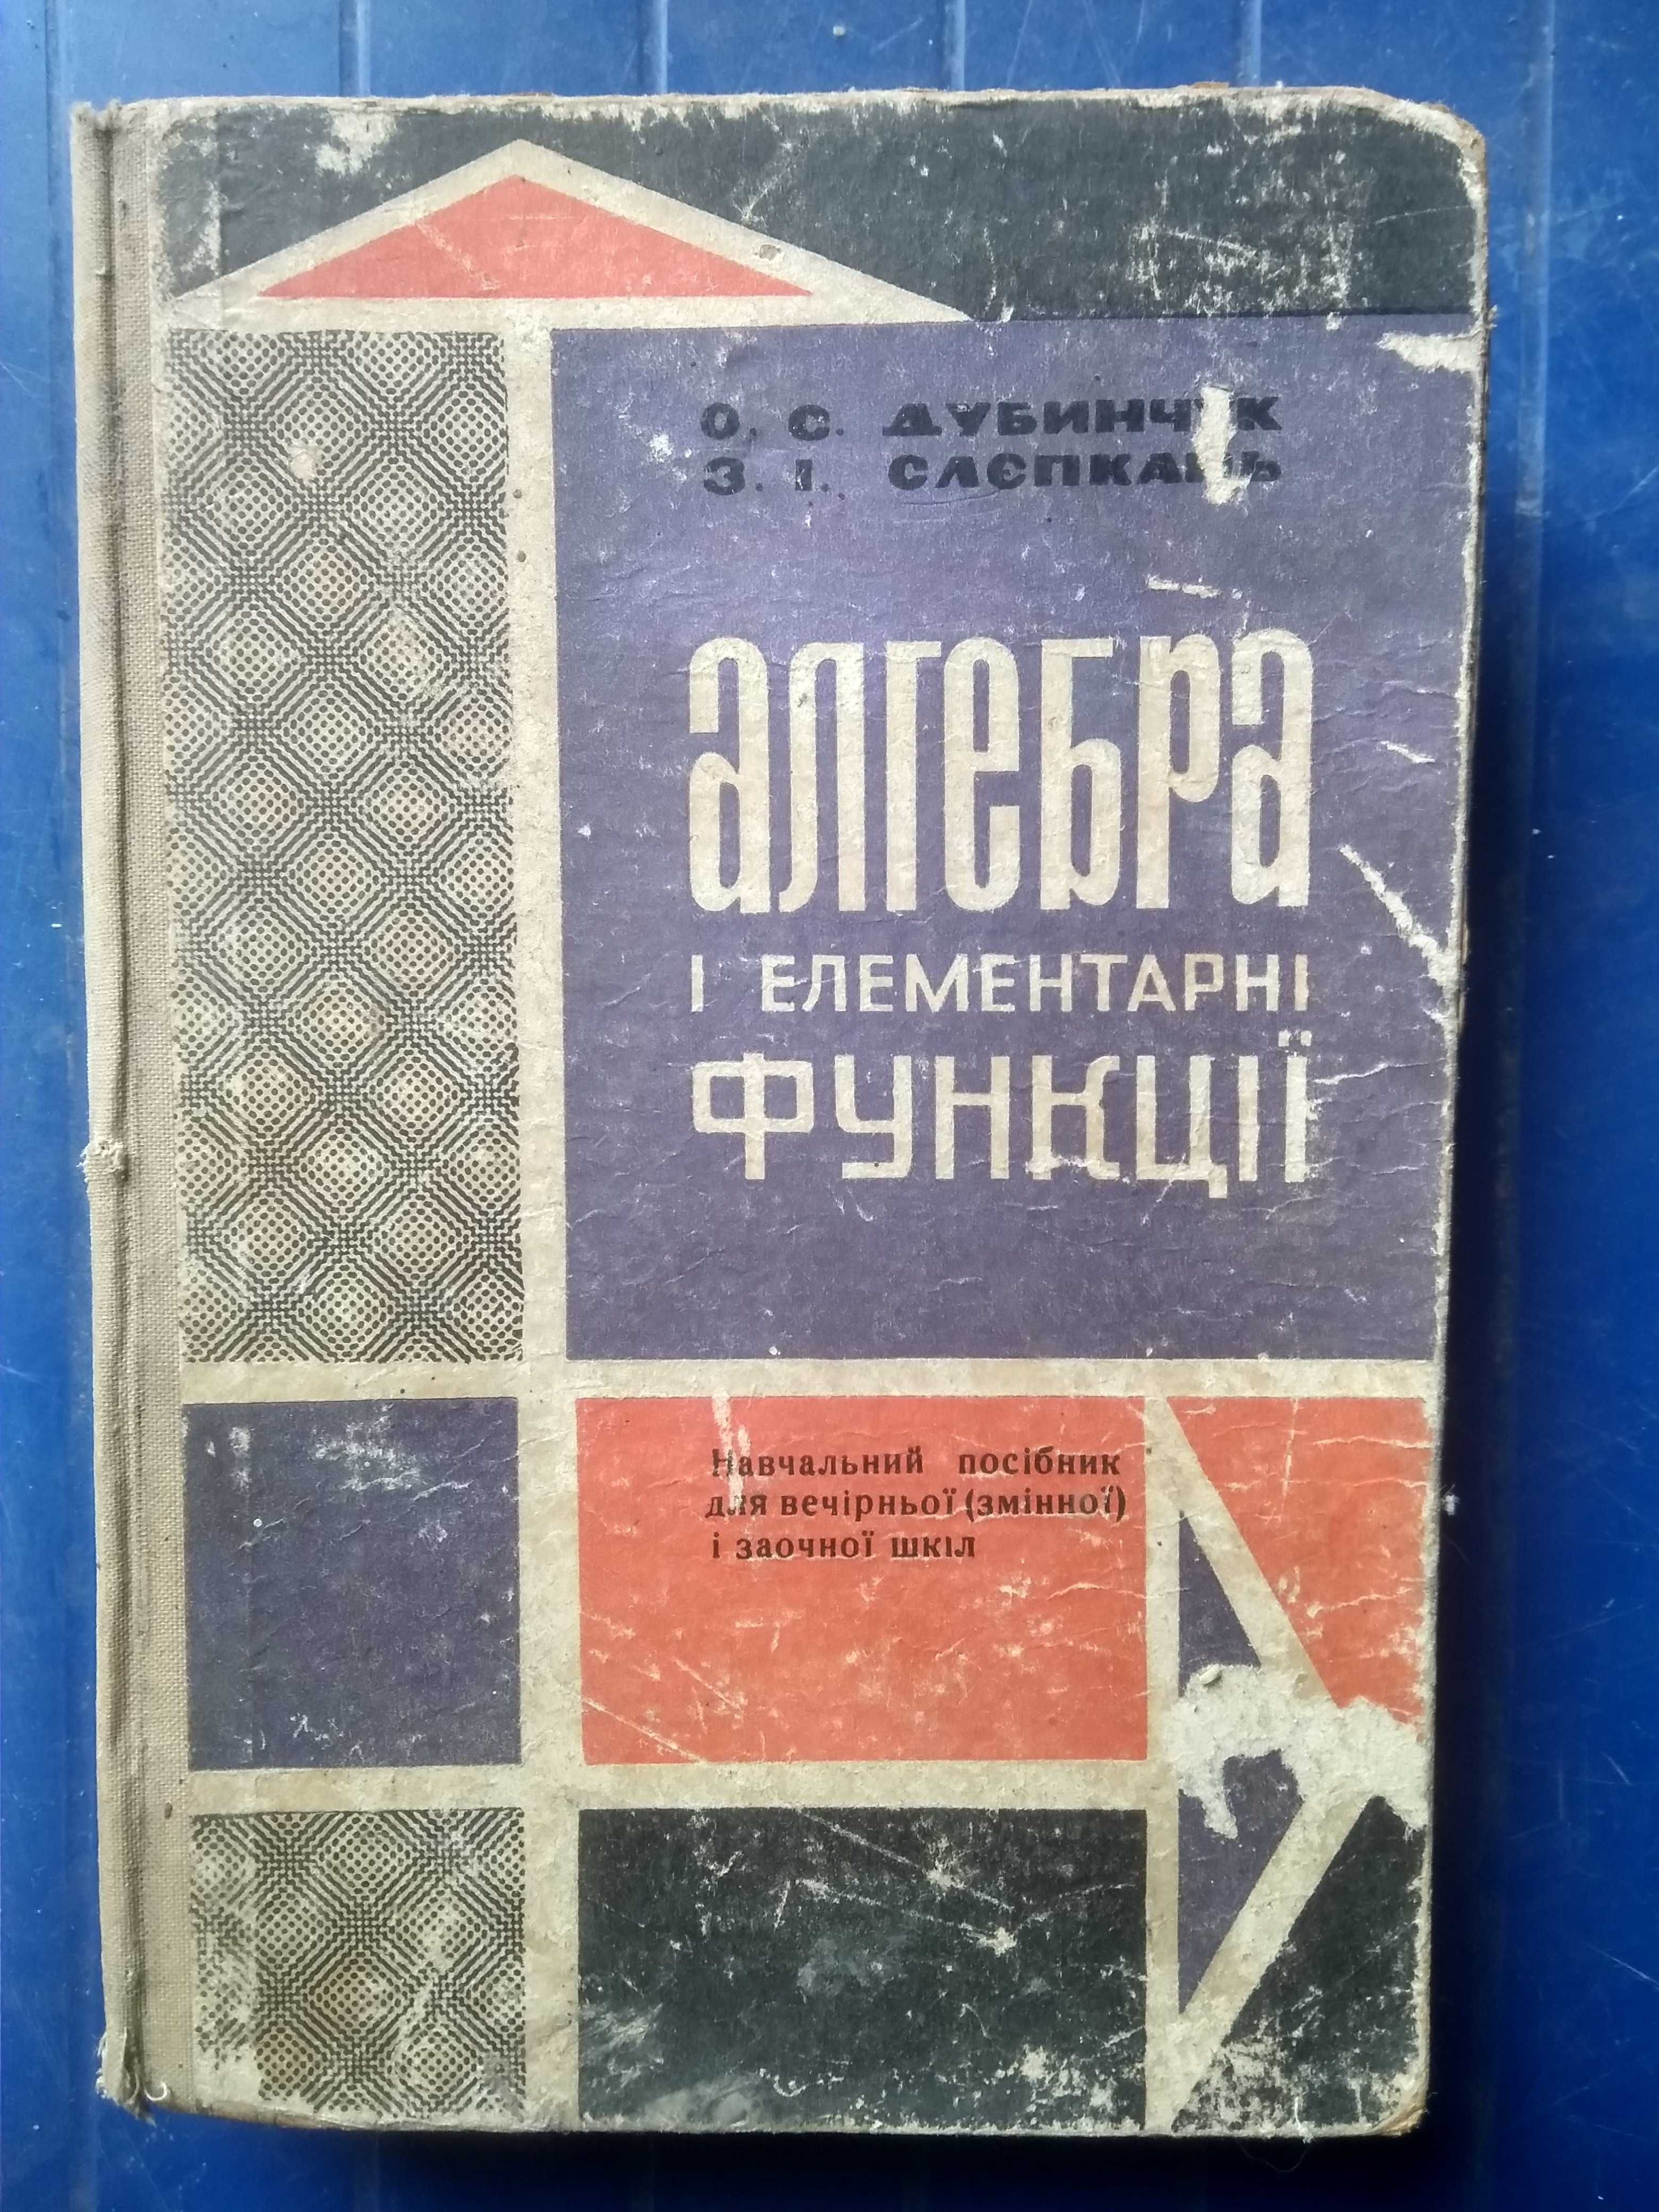 Учебники СССР по математике, алгебре, физике, механике.